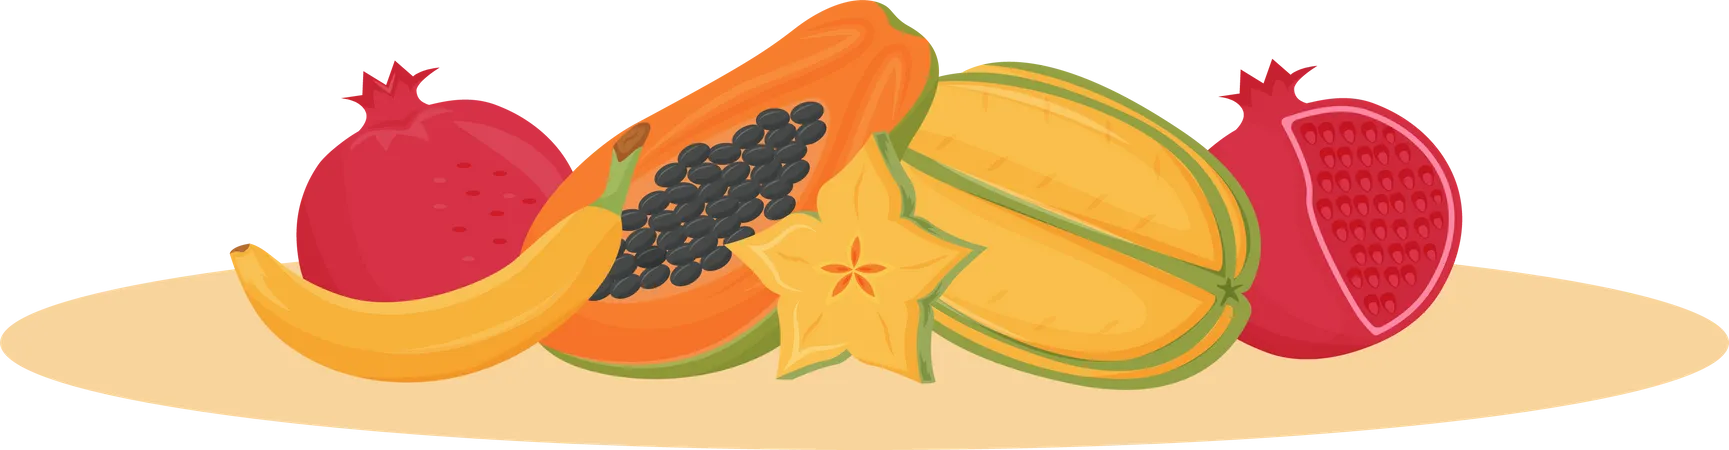 Exotic fruits Illustration